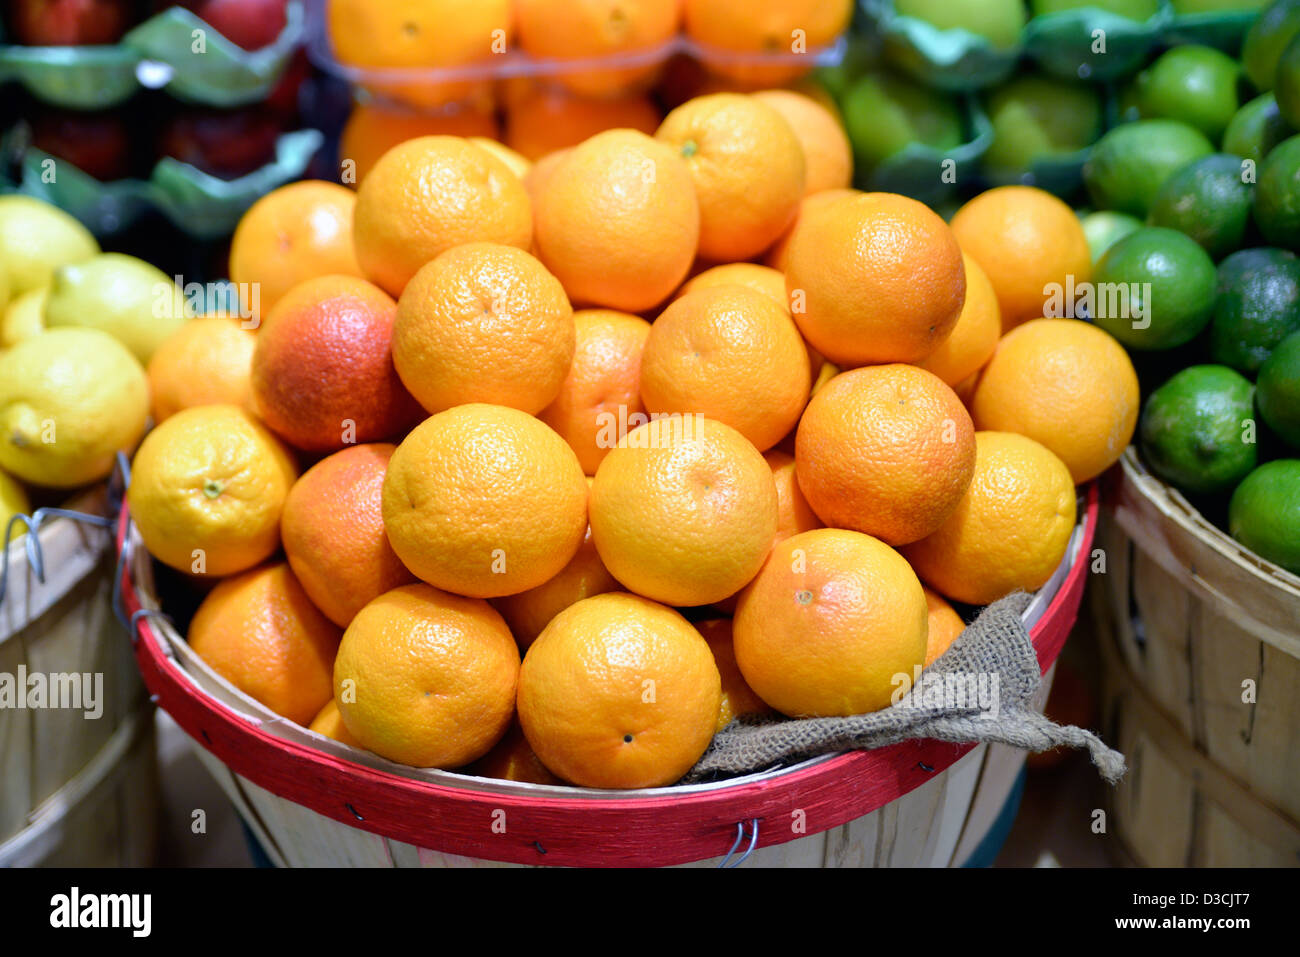 Scheffel von Orangen, Zitronen und Limetten, dargestellt in einem Einzelhandelsmarkt Gourmet-Essen Stockfoto